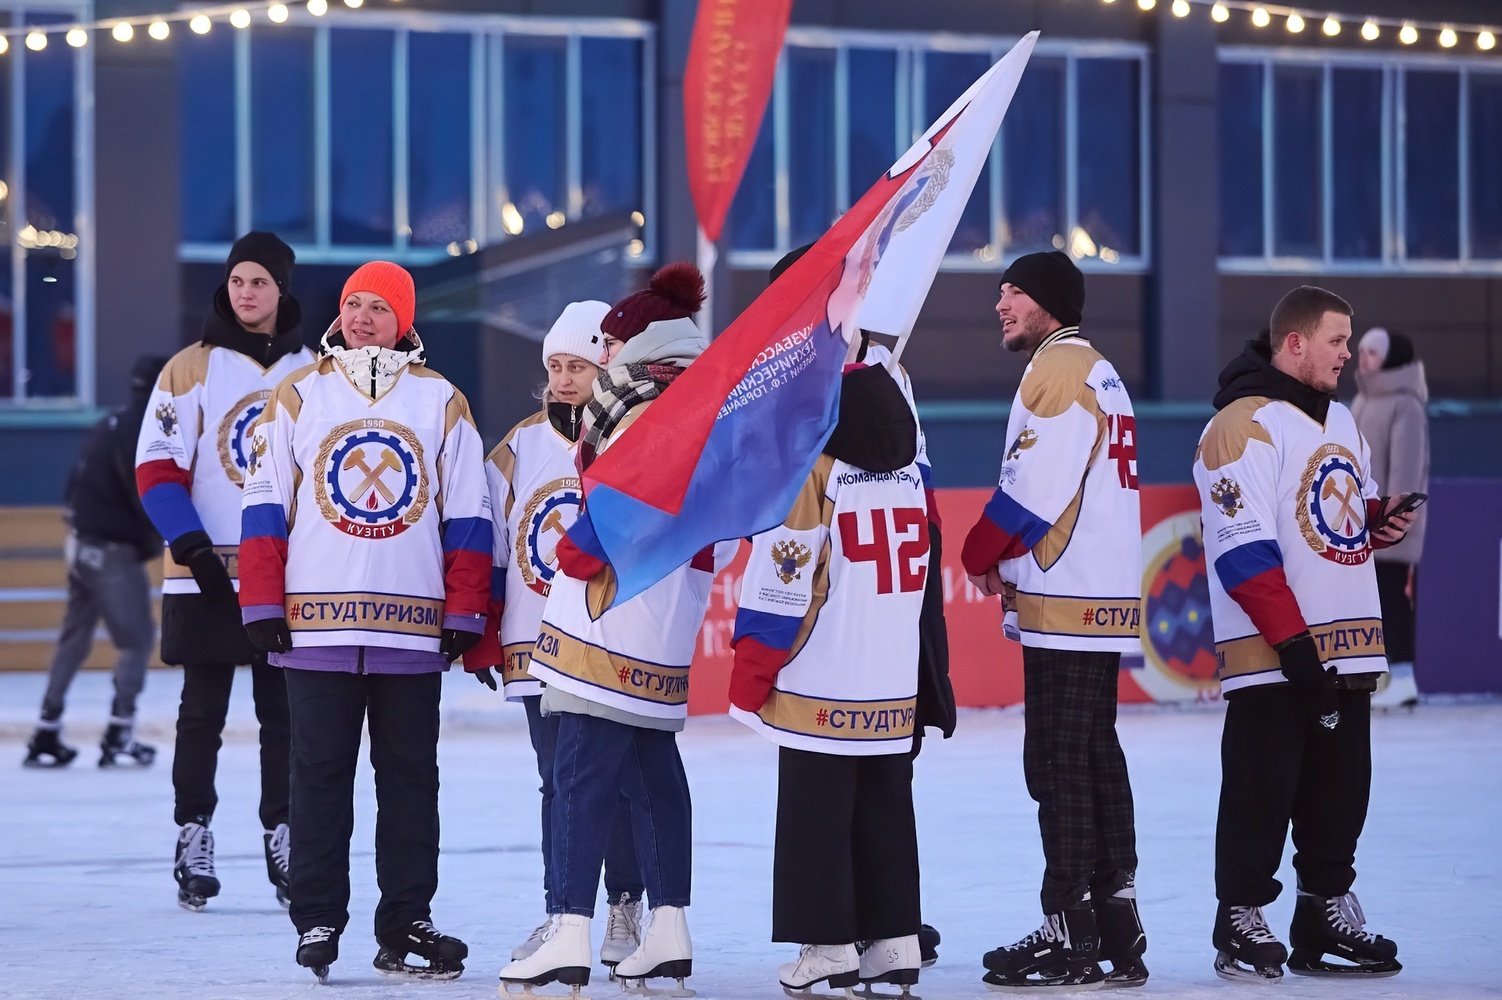 В Кемерове состоялся массовый студенческий забег на коньках